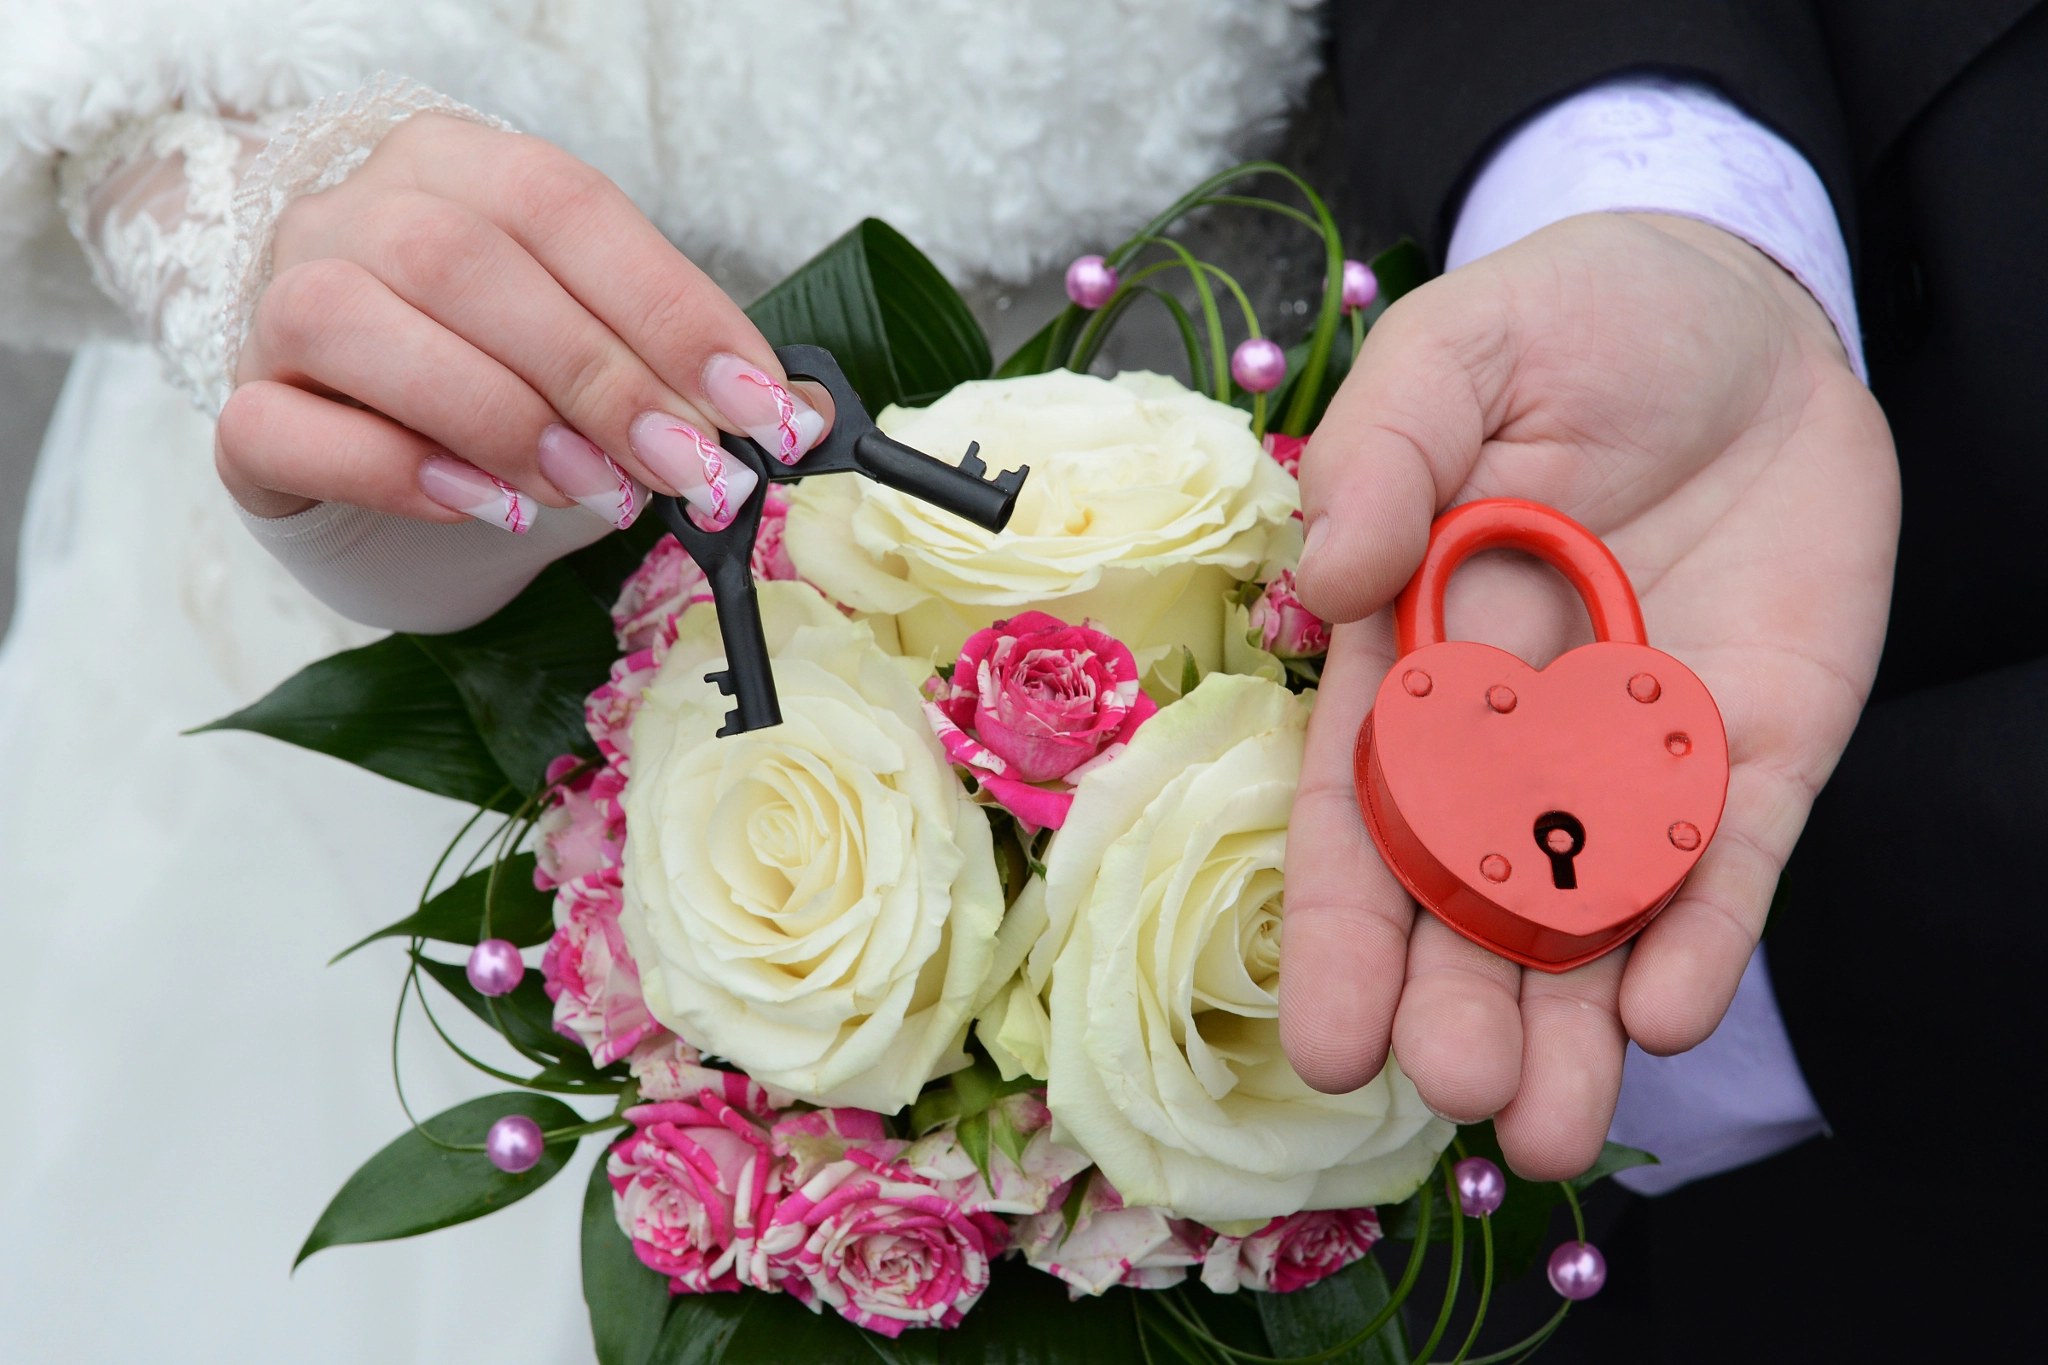 Nikon D800 + AF Nikkor 70-210mm f/4-5.6D sample photo. Couple's hands holding wedding lock photography